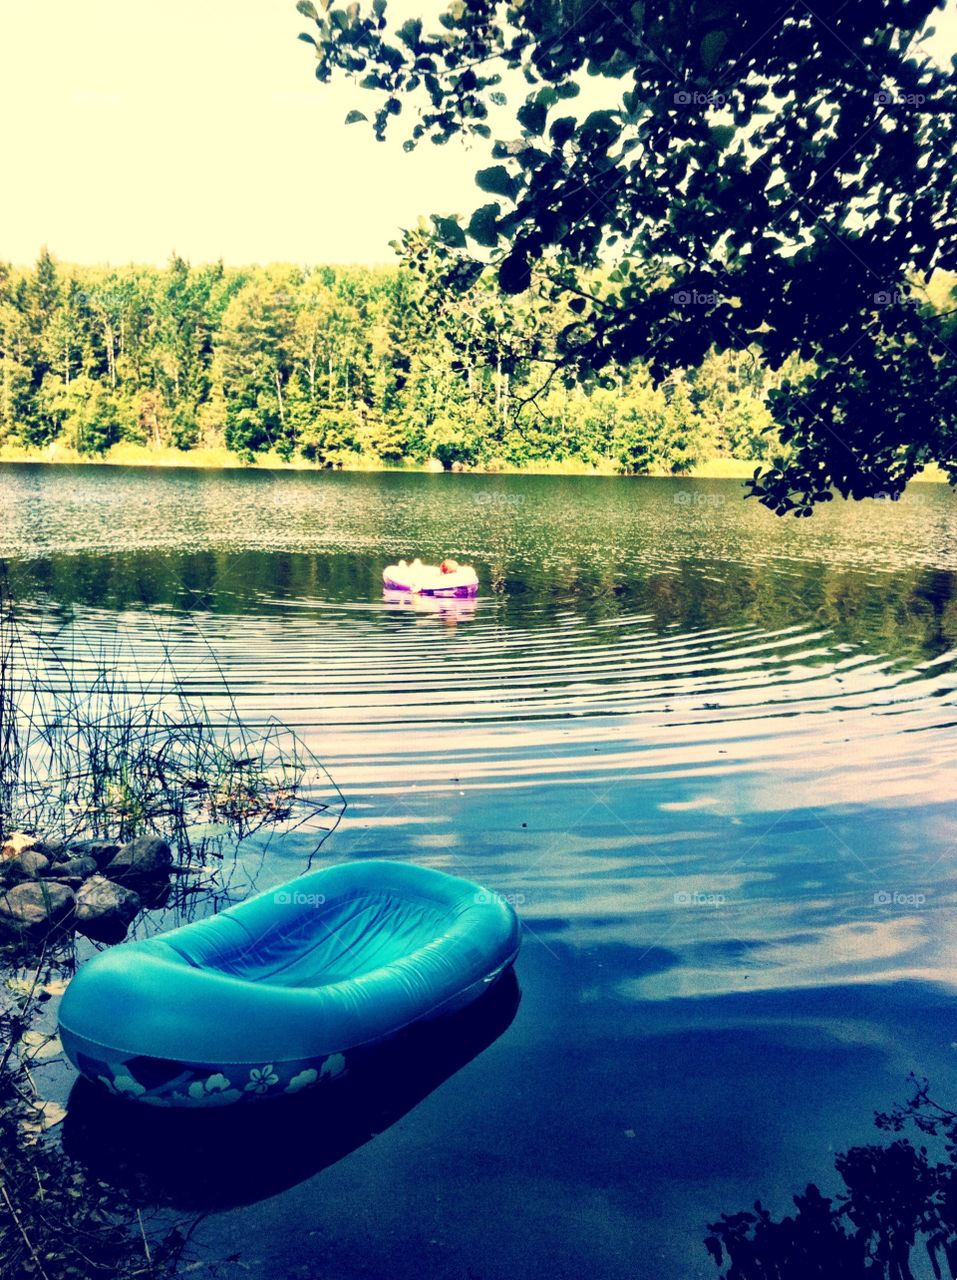 Relaxing on lake